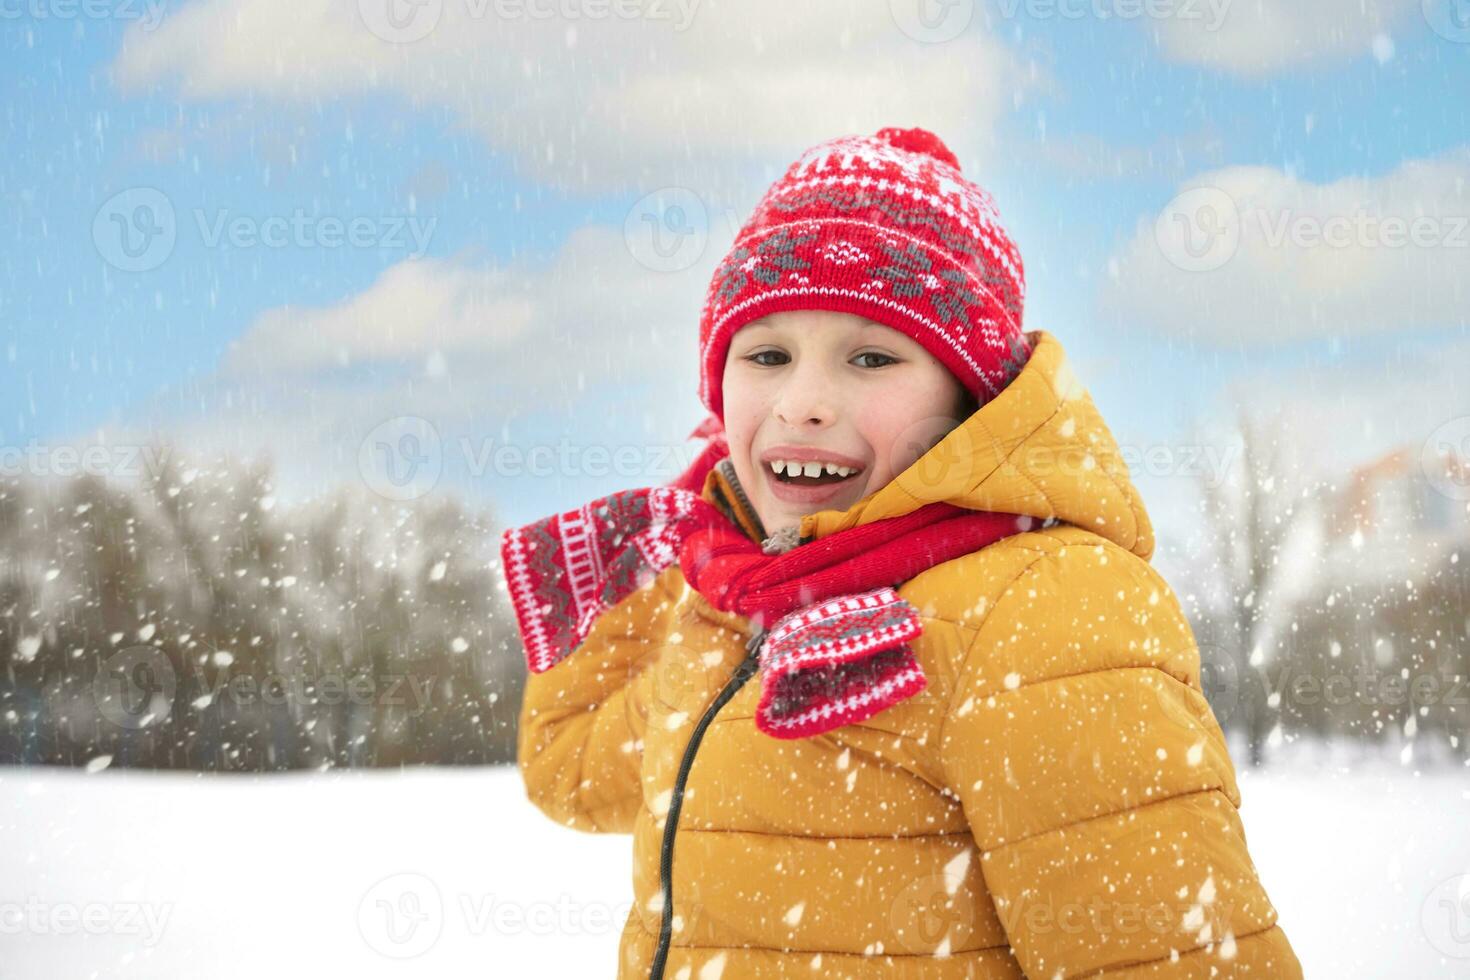 Petit Garçon En Vêtements D'hiver Bleu. Activités En Plein Air Pour Les  Enfants. Image stock - Image du enfance, chapeau: 275886345